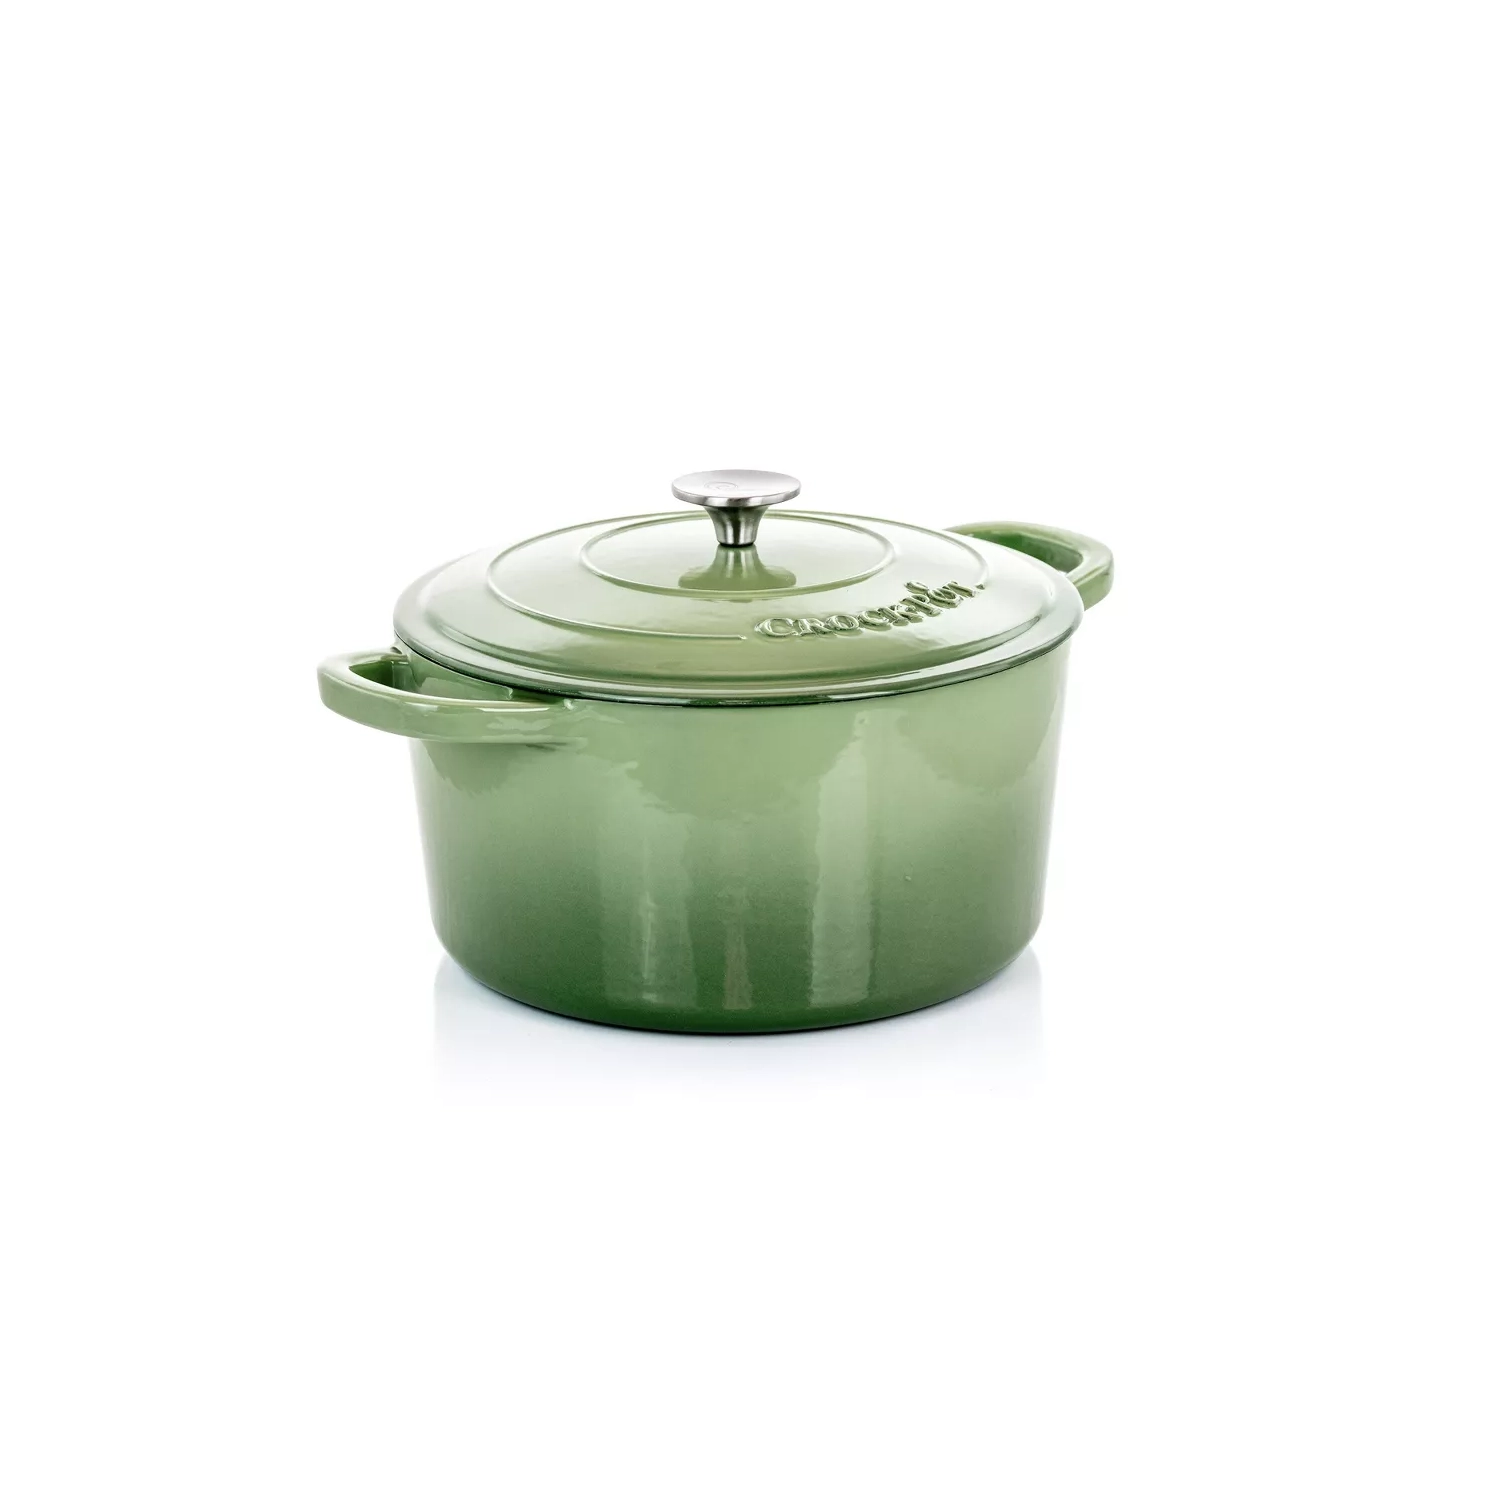 Crock Pot Artisan 5-Quart Dutch Oven - Pistachio Green, 5 qt - King Soopers